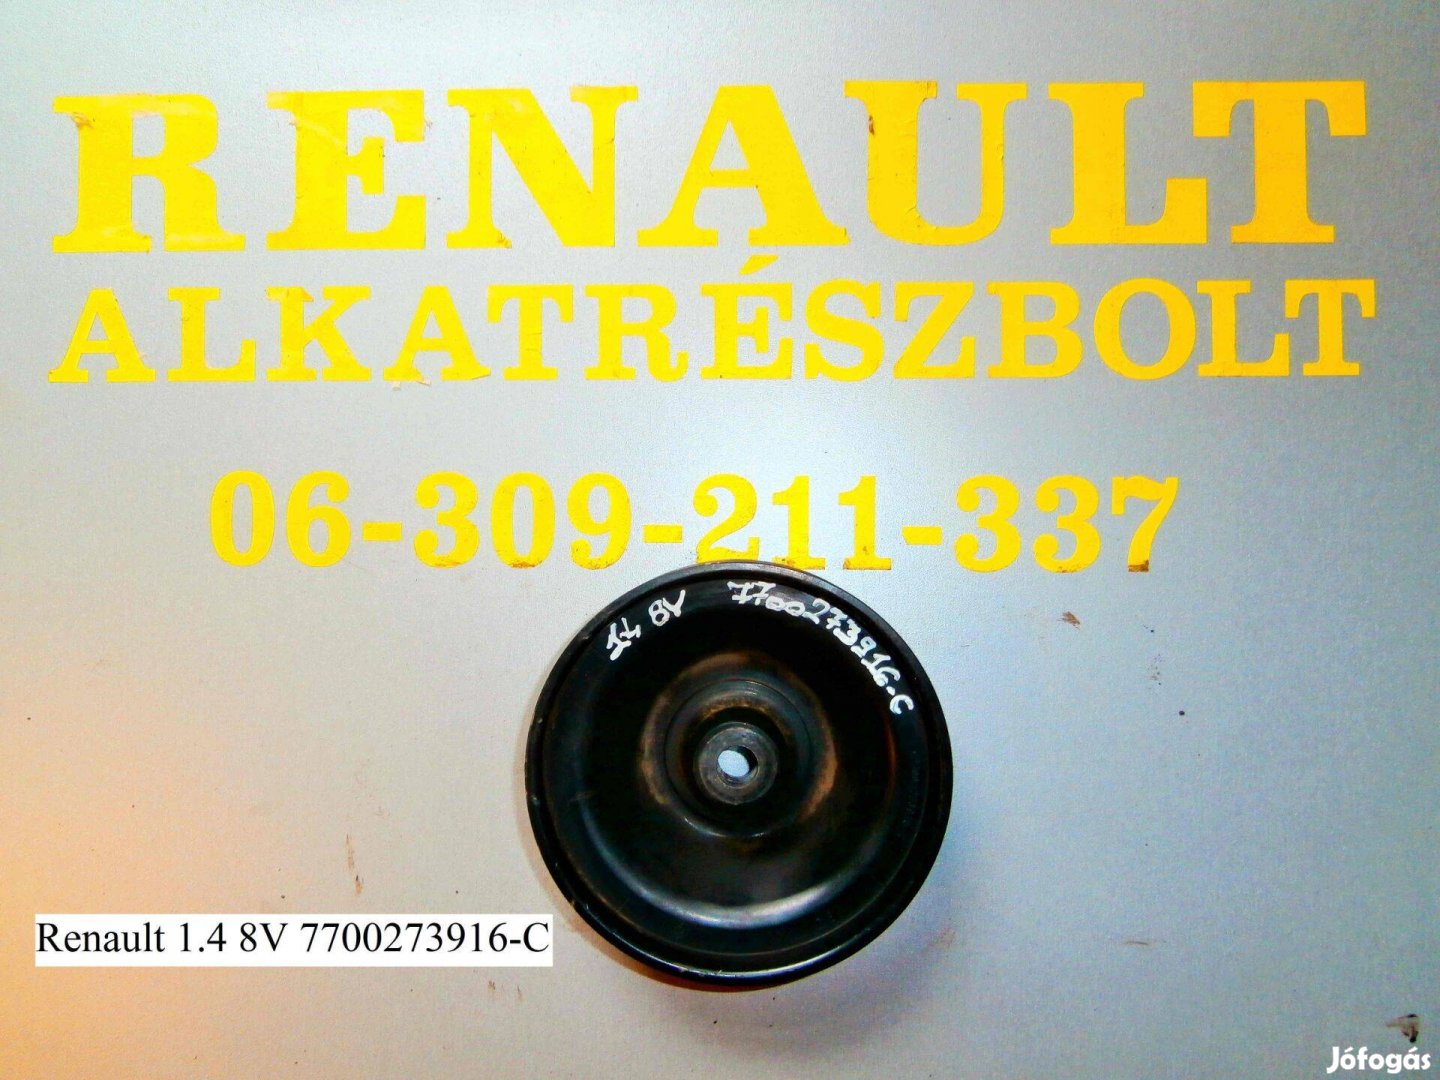 Renault 1.4 8V 7700273916-C főtengely ékszíjtárcsa